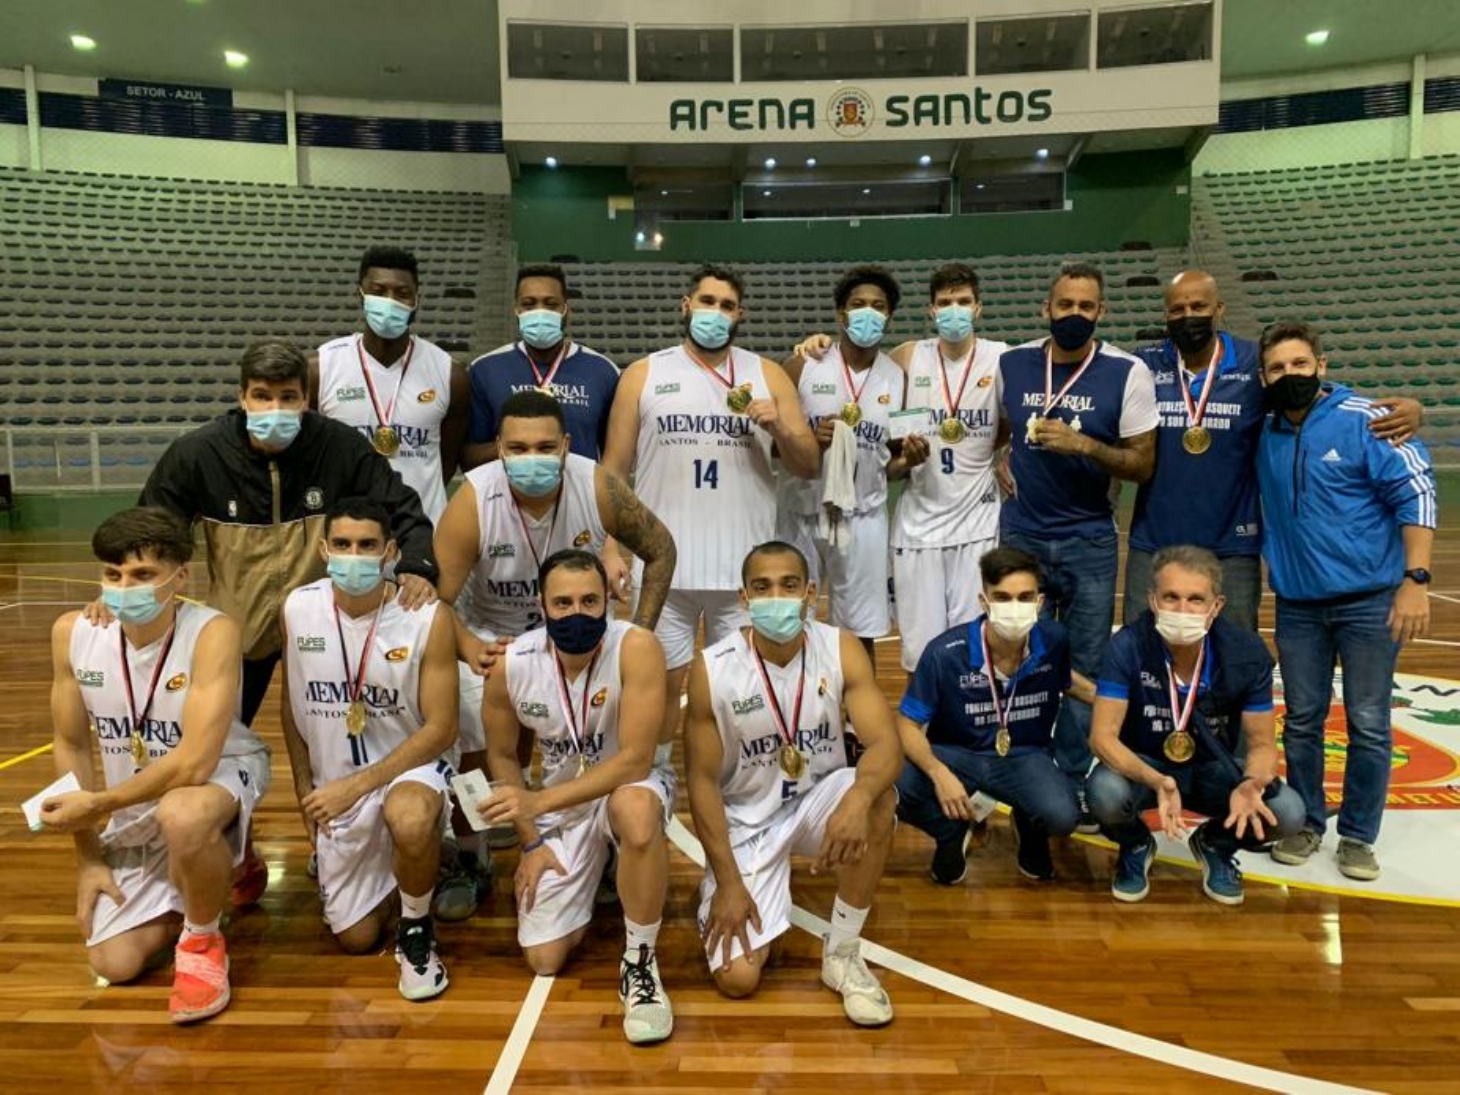 Basquete santista é campeão dos Jogos Regionais de Retomada Esportiva | Jornal da Orla